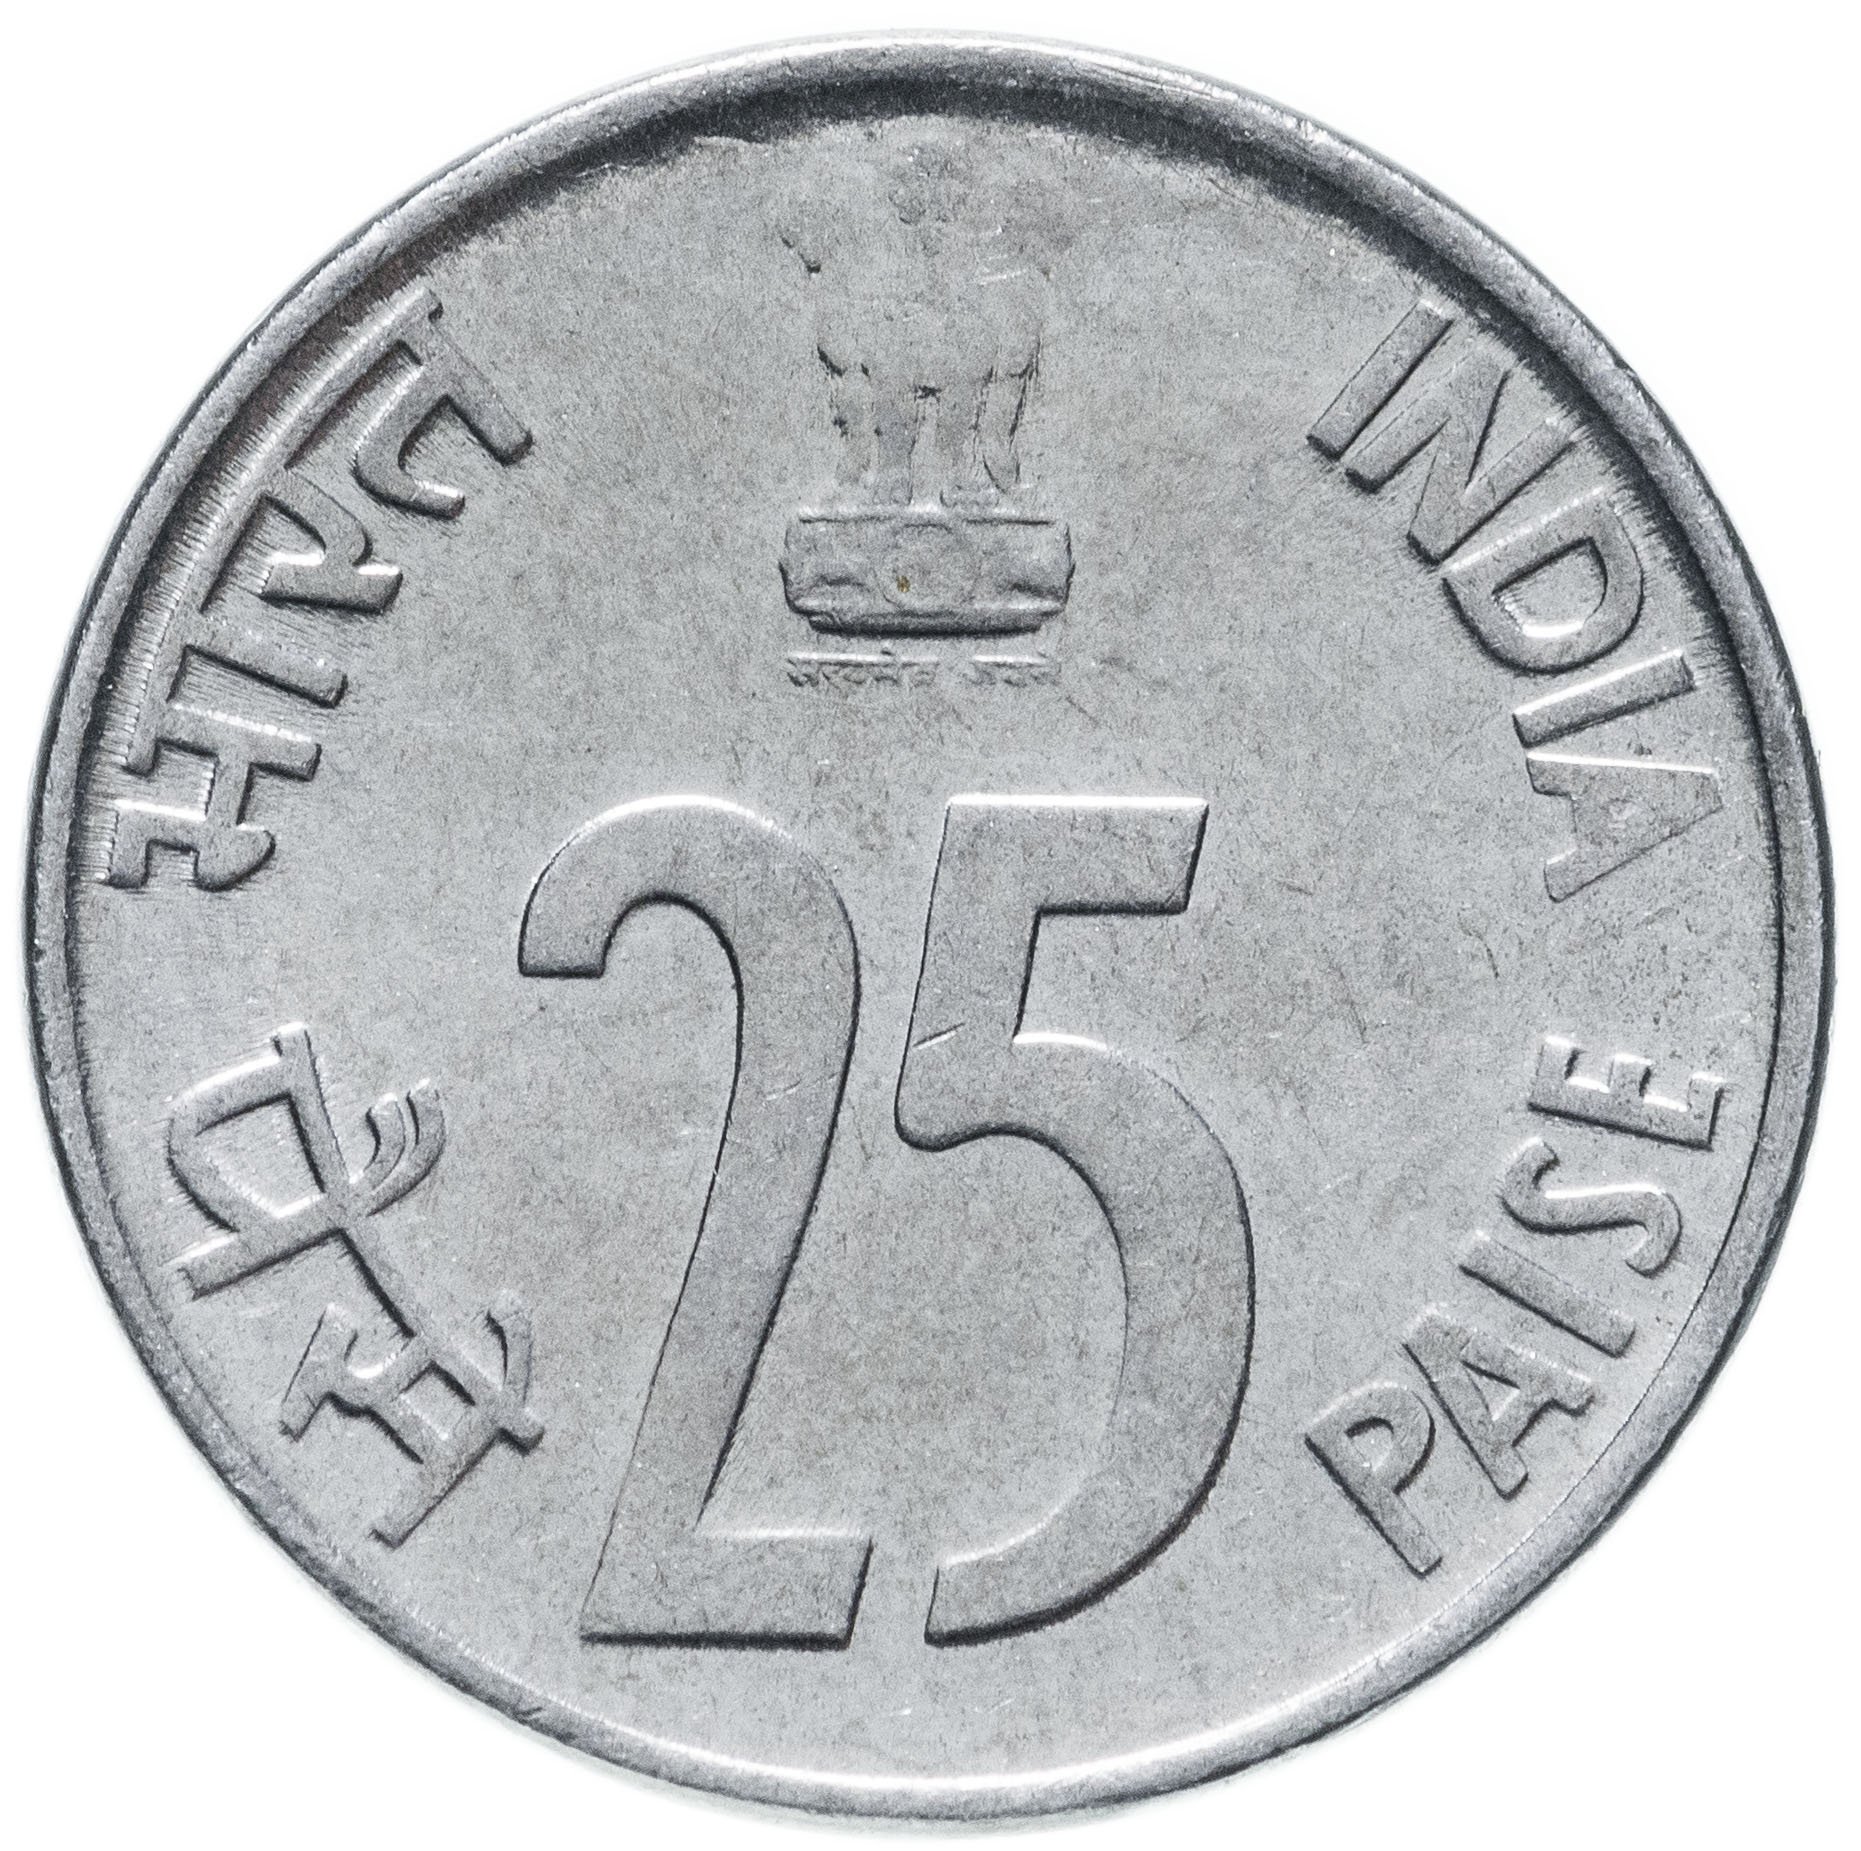 Цб рупия рубль. Монеты Индии. Индийская рупия монеты. Индийская монета 1 рупий. Монеты 1998 года.